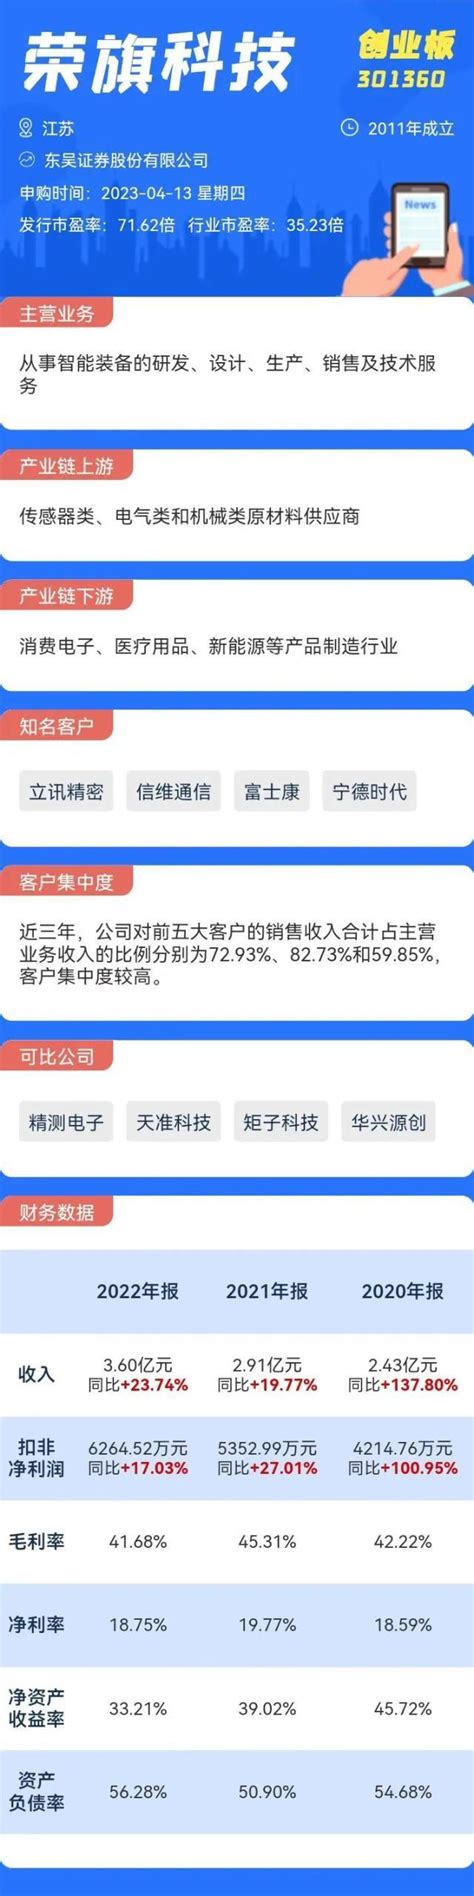 荣旗科技IPO专题-中国上市公司网